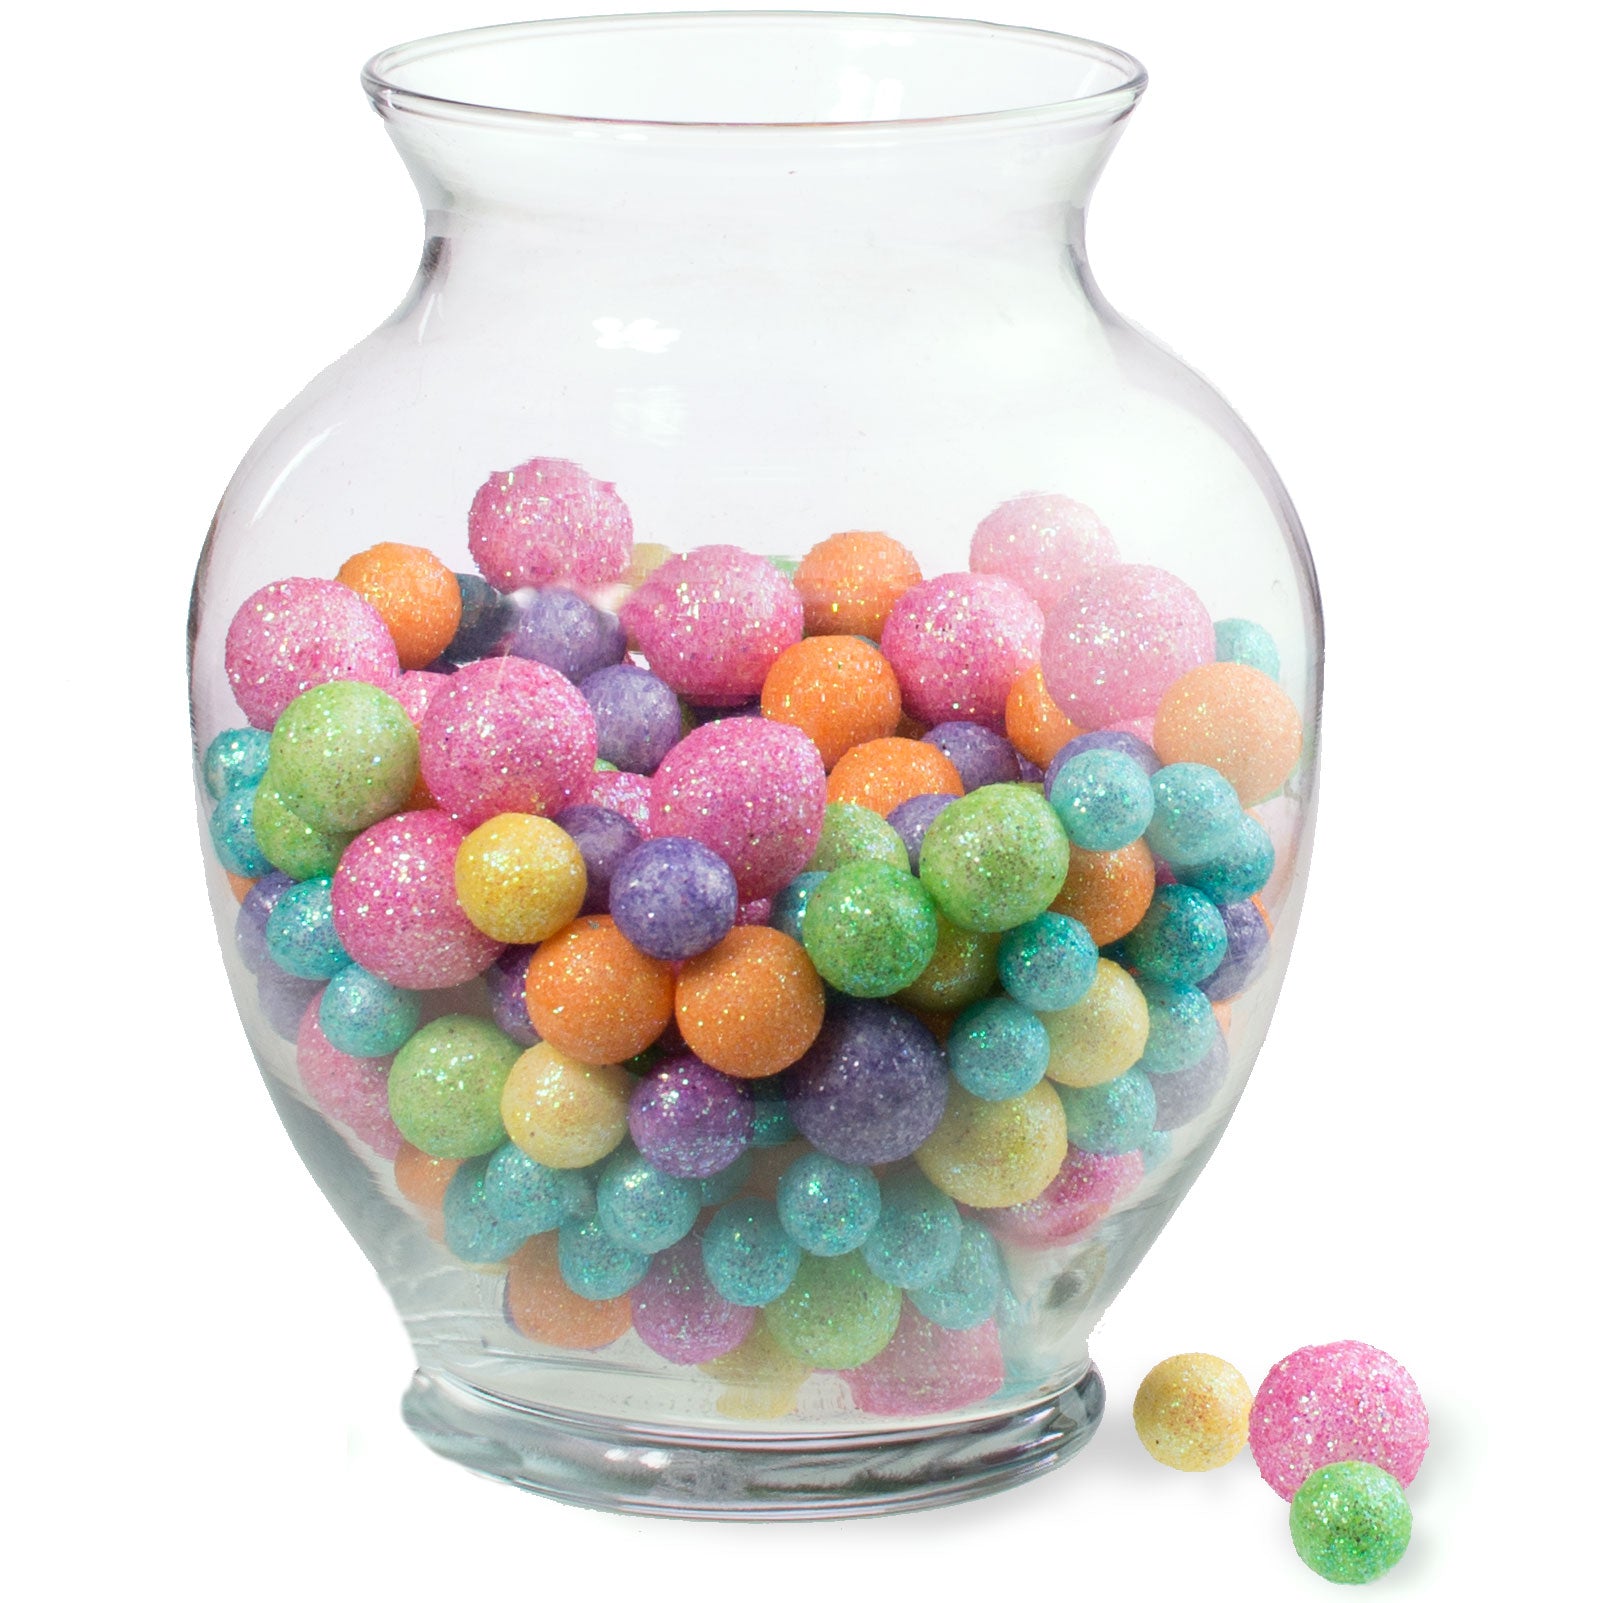 Glitter Pastel Confetti Balls